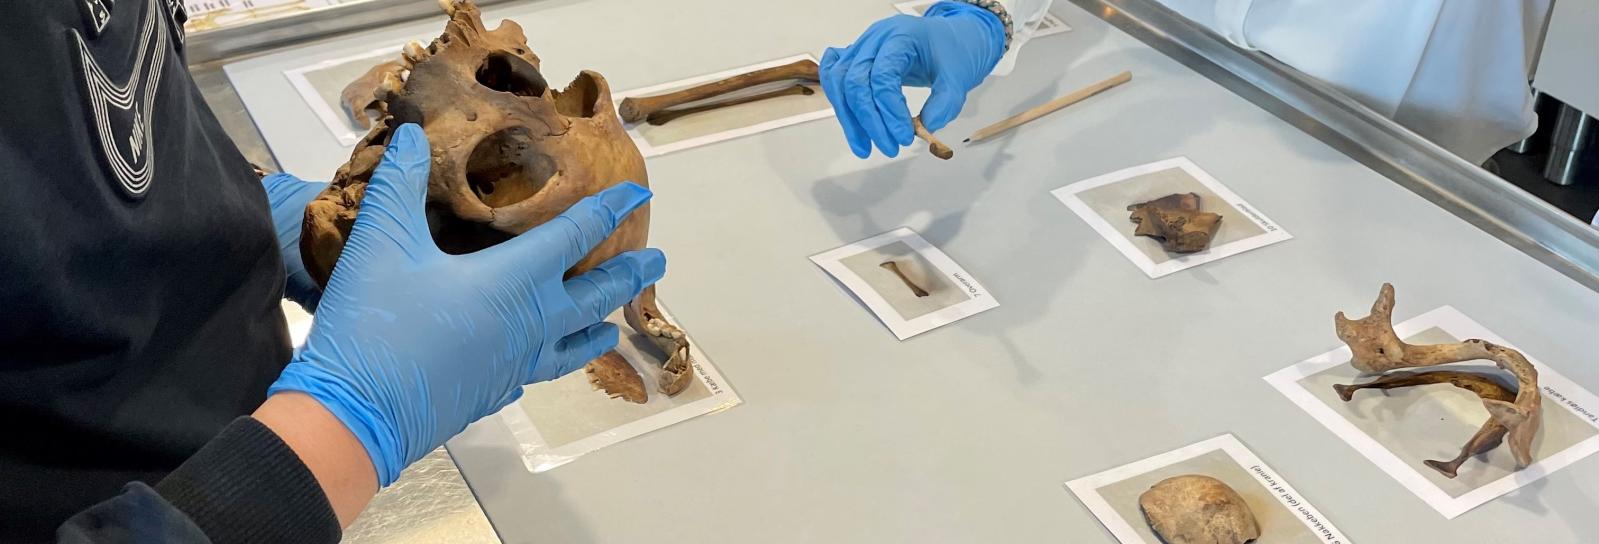 Elever undersøge 300 år gamle mennskeknogler fra en arkæologisk udgravning.